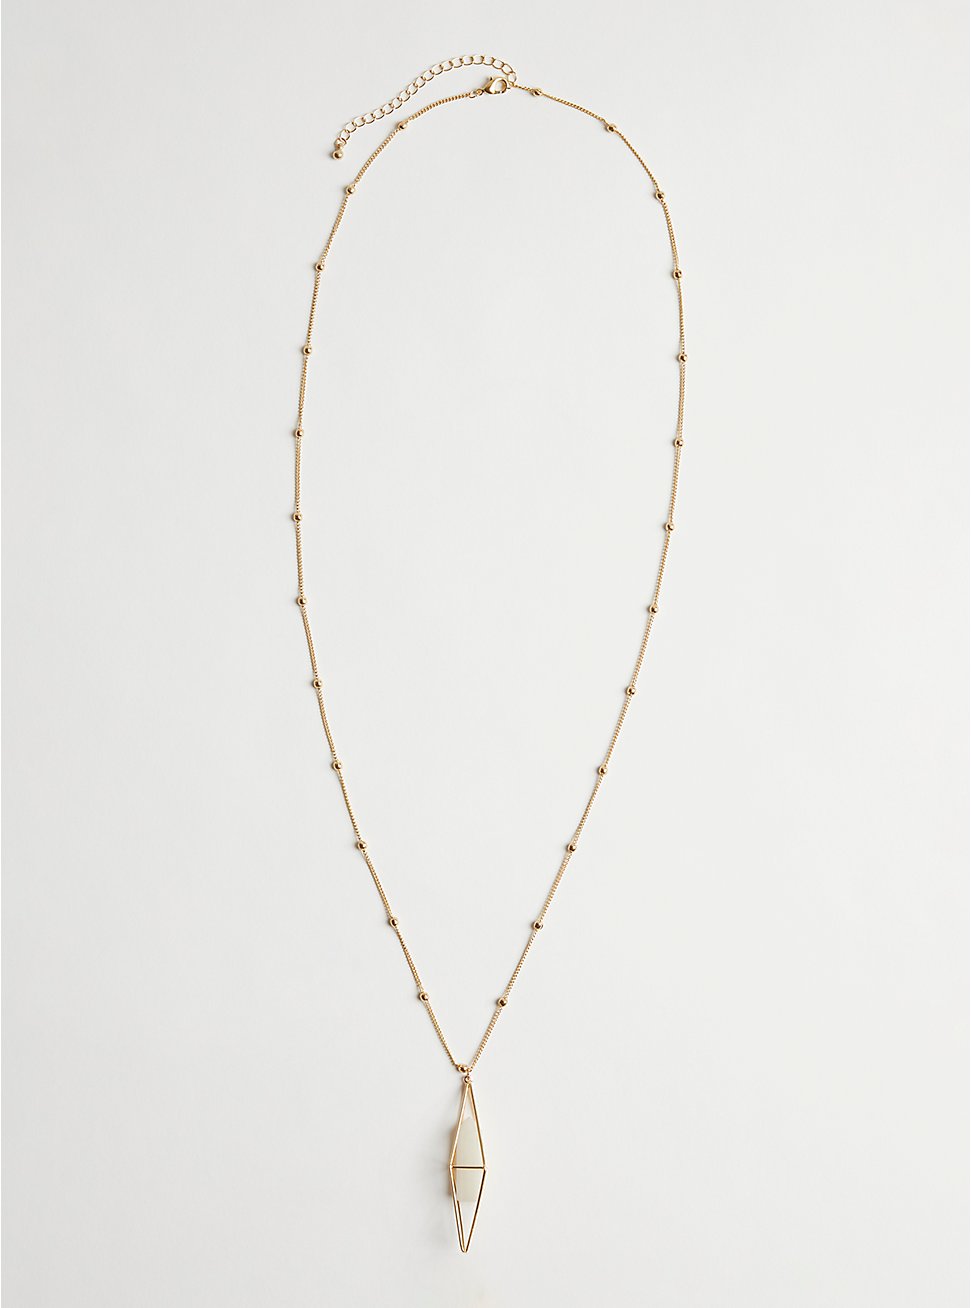 Plus Size Necklace with Quartz Pendant - Gold Tone , , hi-res